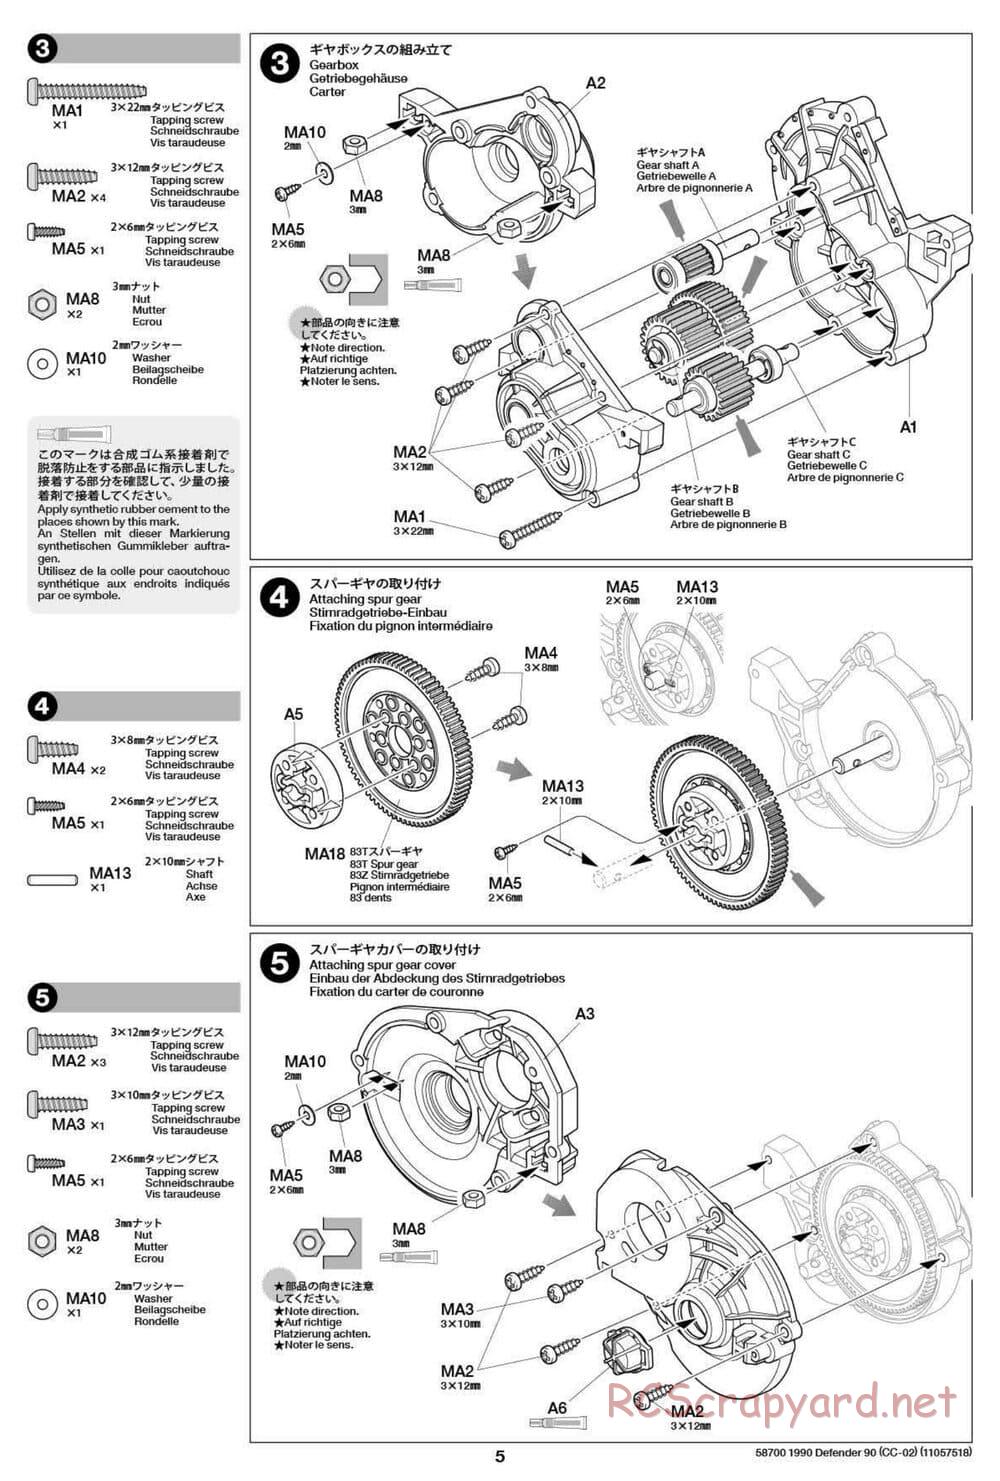 Tamiya - 1990 Land Rover Defender 90 - CC-02 Chassis - Manual - Page 5